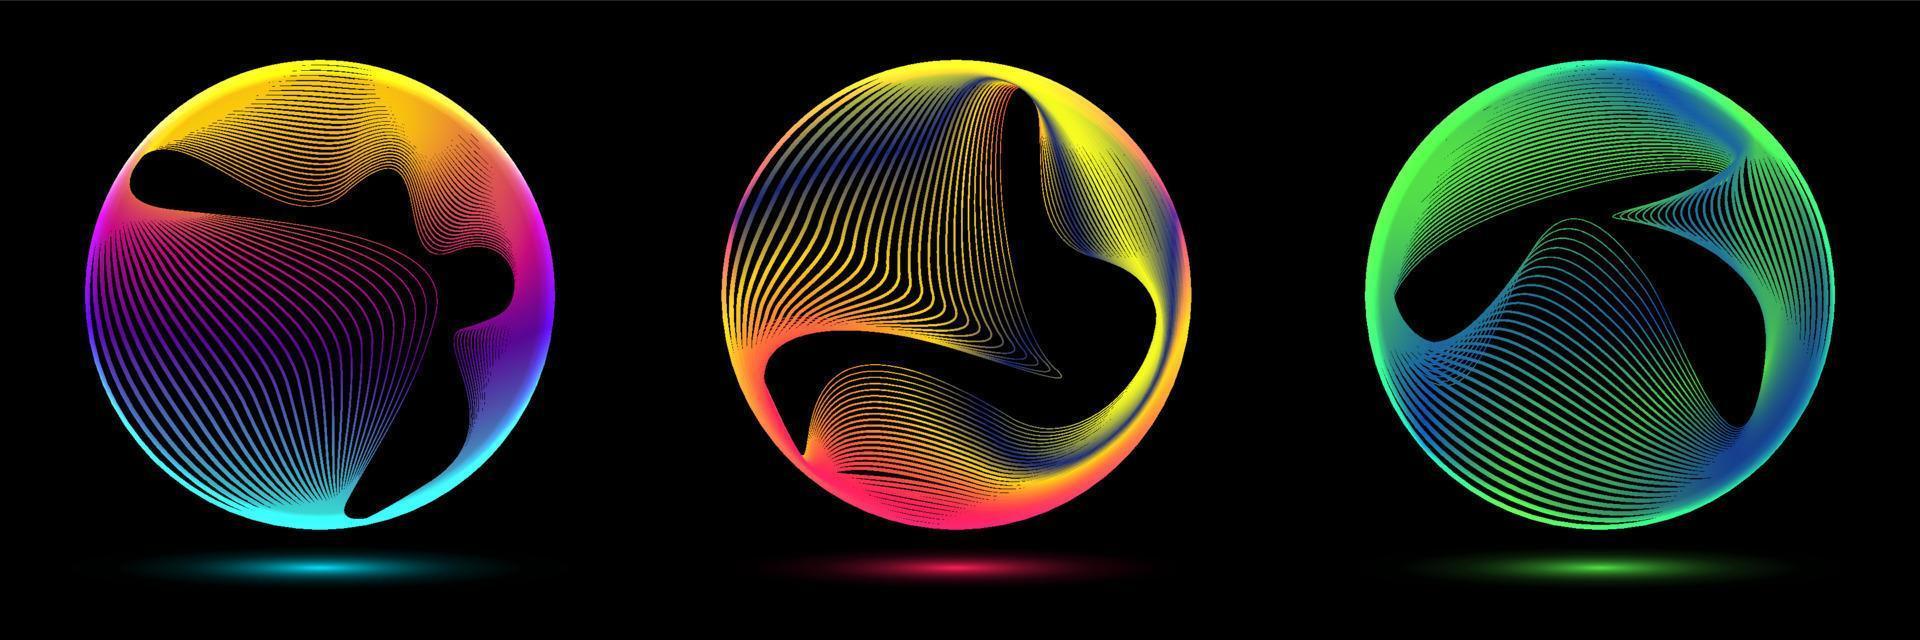 conjunto de círculos de color neón brillante forma de curva redonda con líneas dinámicas onduladas aisladas sobre fondo negro vector